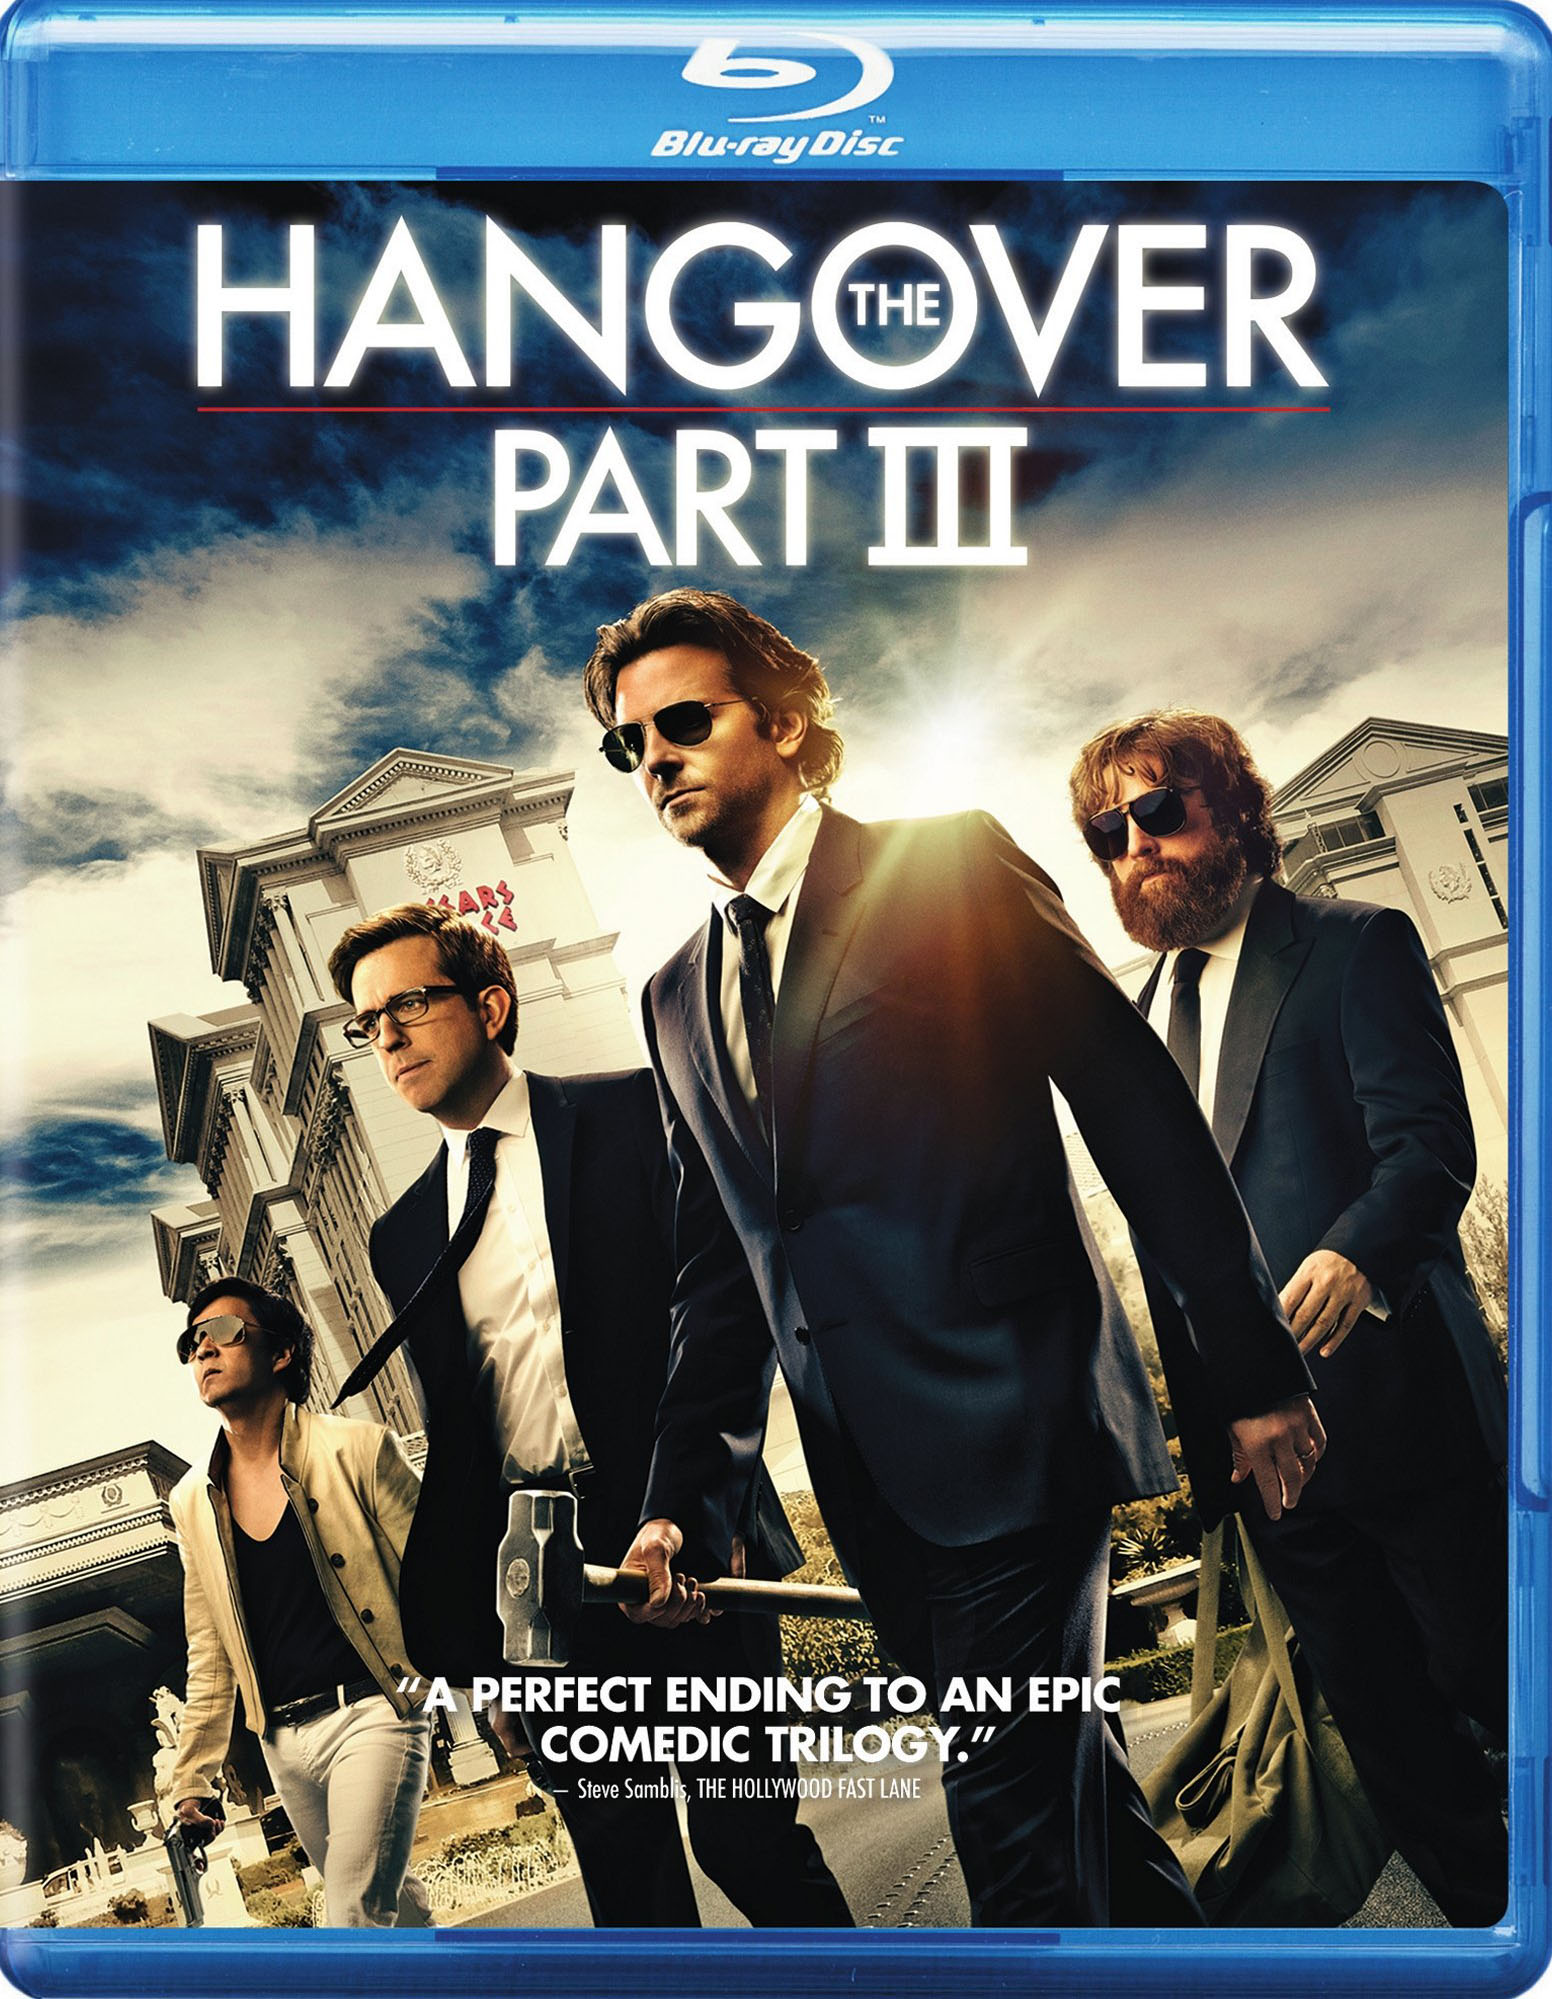 The Hangover III [Blu-ray] [2013] - Best Buy